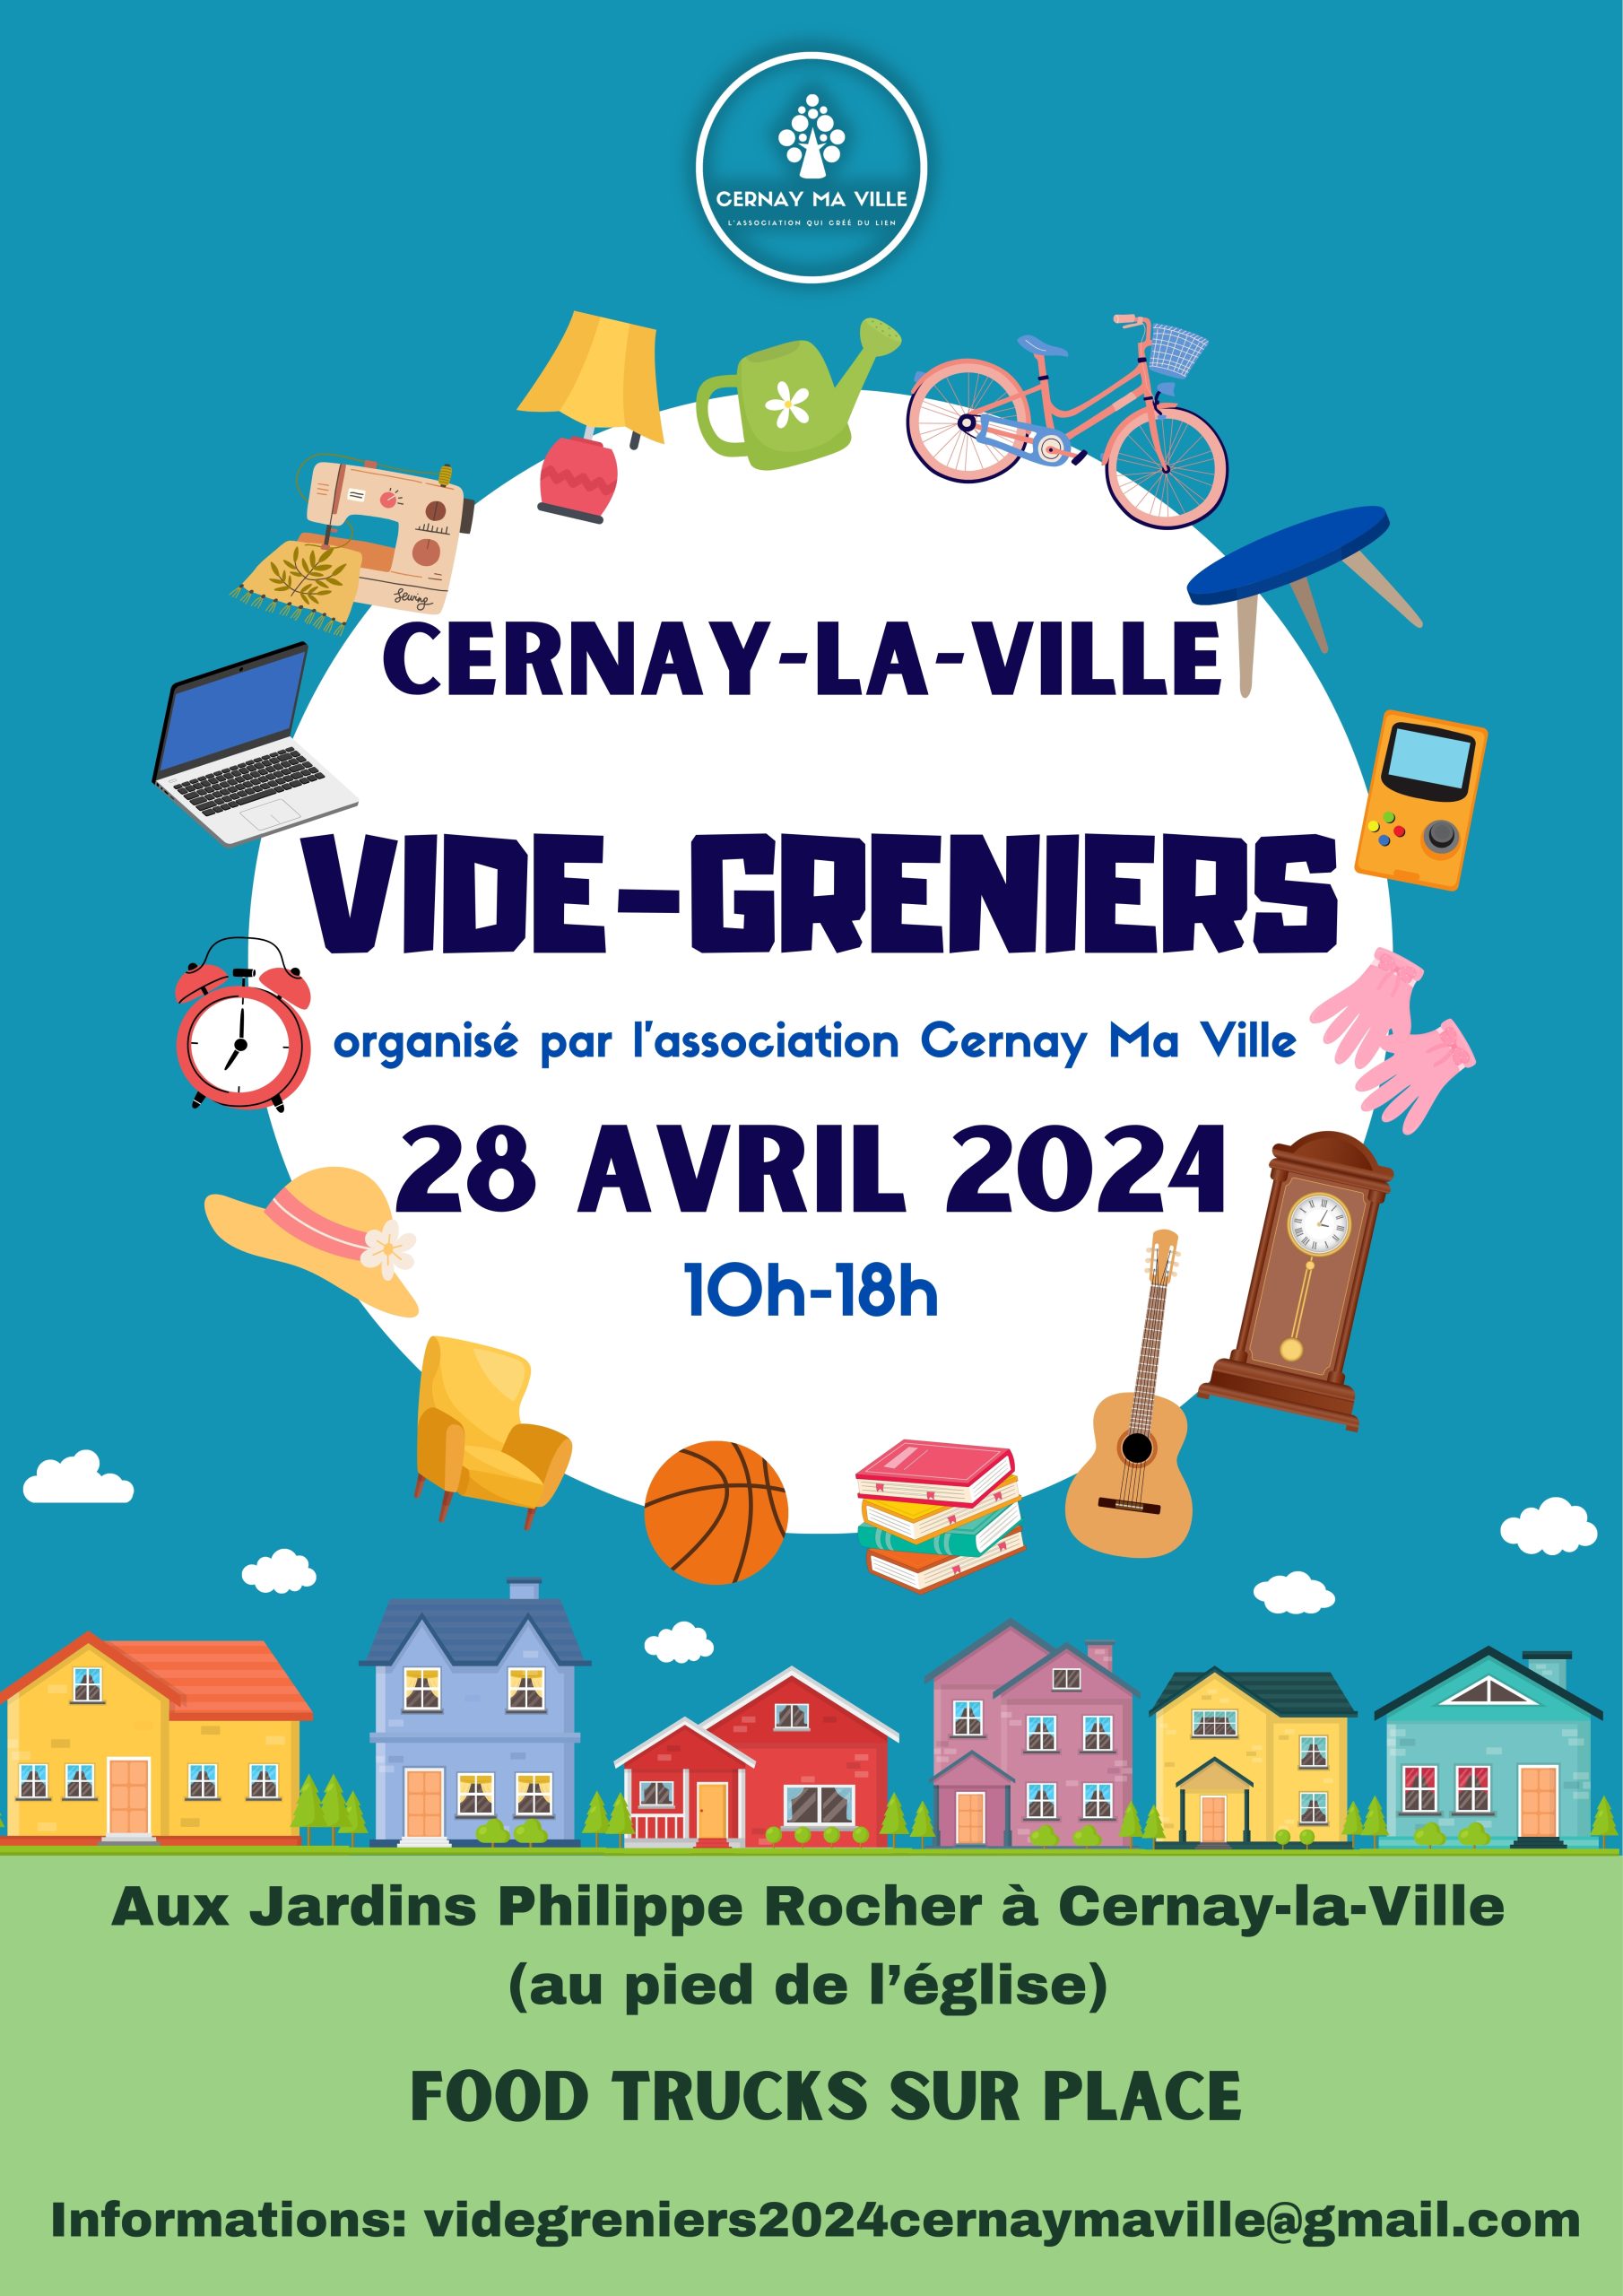 Vide grenier à Cernay-la-Ville le 28 avril 2024